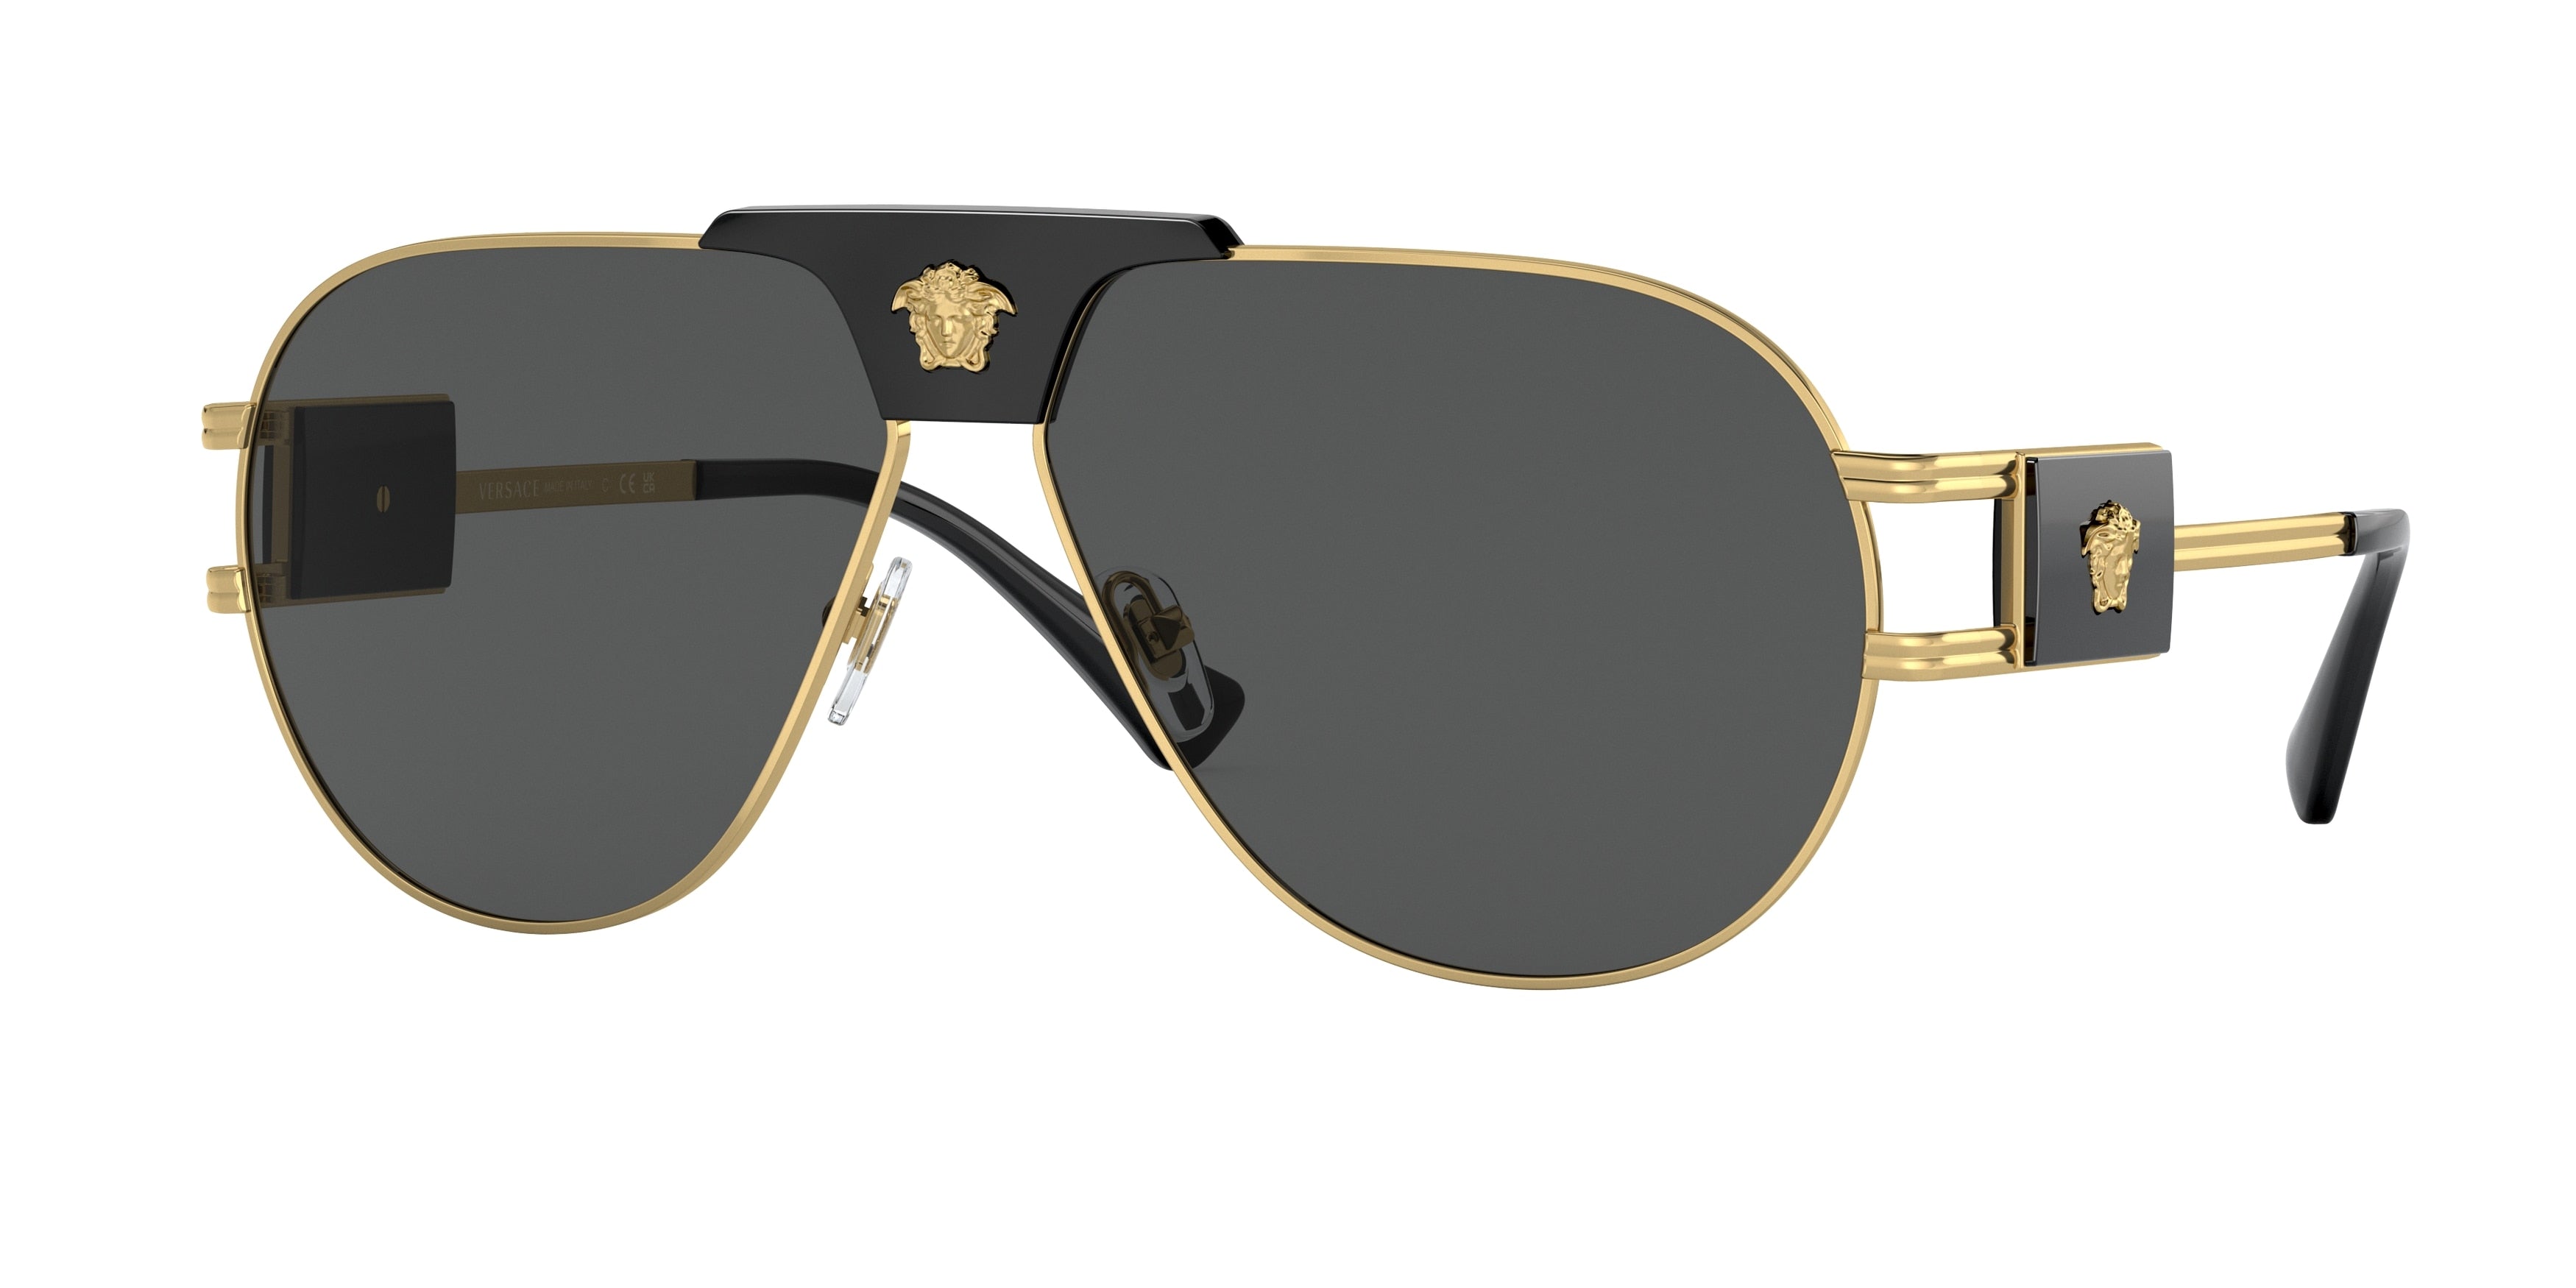 Versace VE2252 Pilot Sunglasses  100287-Gold 63-145-12 - Color Map Gold